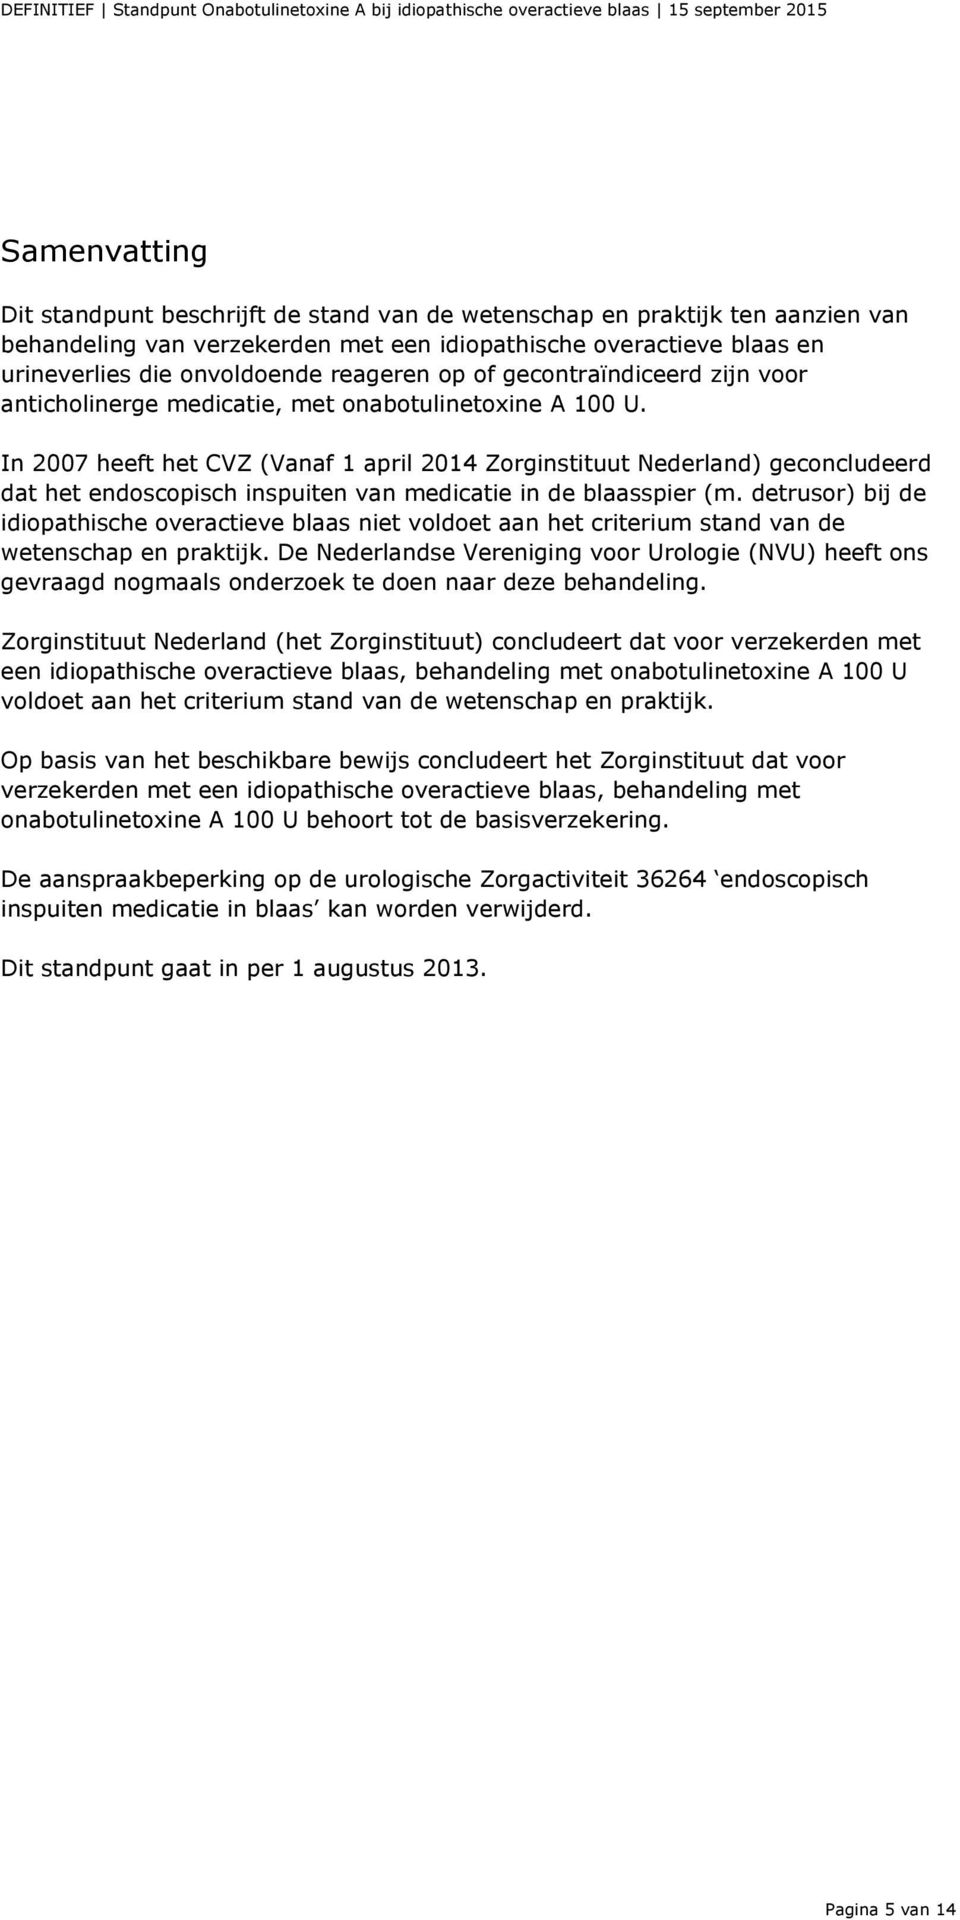 In 2007 heeft het CVZ (Vanaf 1 april 2014 Zorginstituut Nederland) geconcludeerd dat het endoscopisch inspuiten van medicatie in de blaasspier (m.